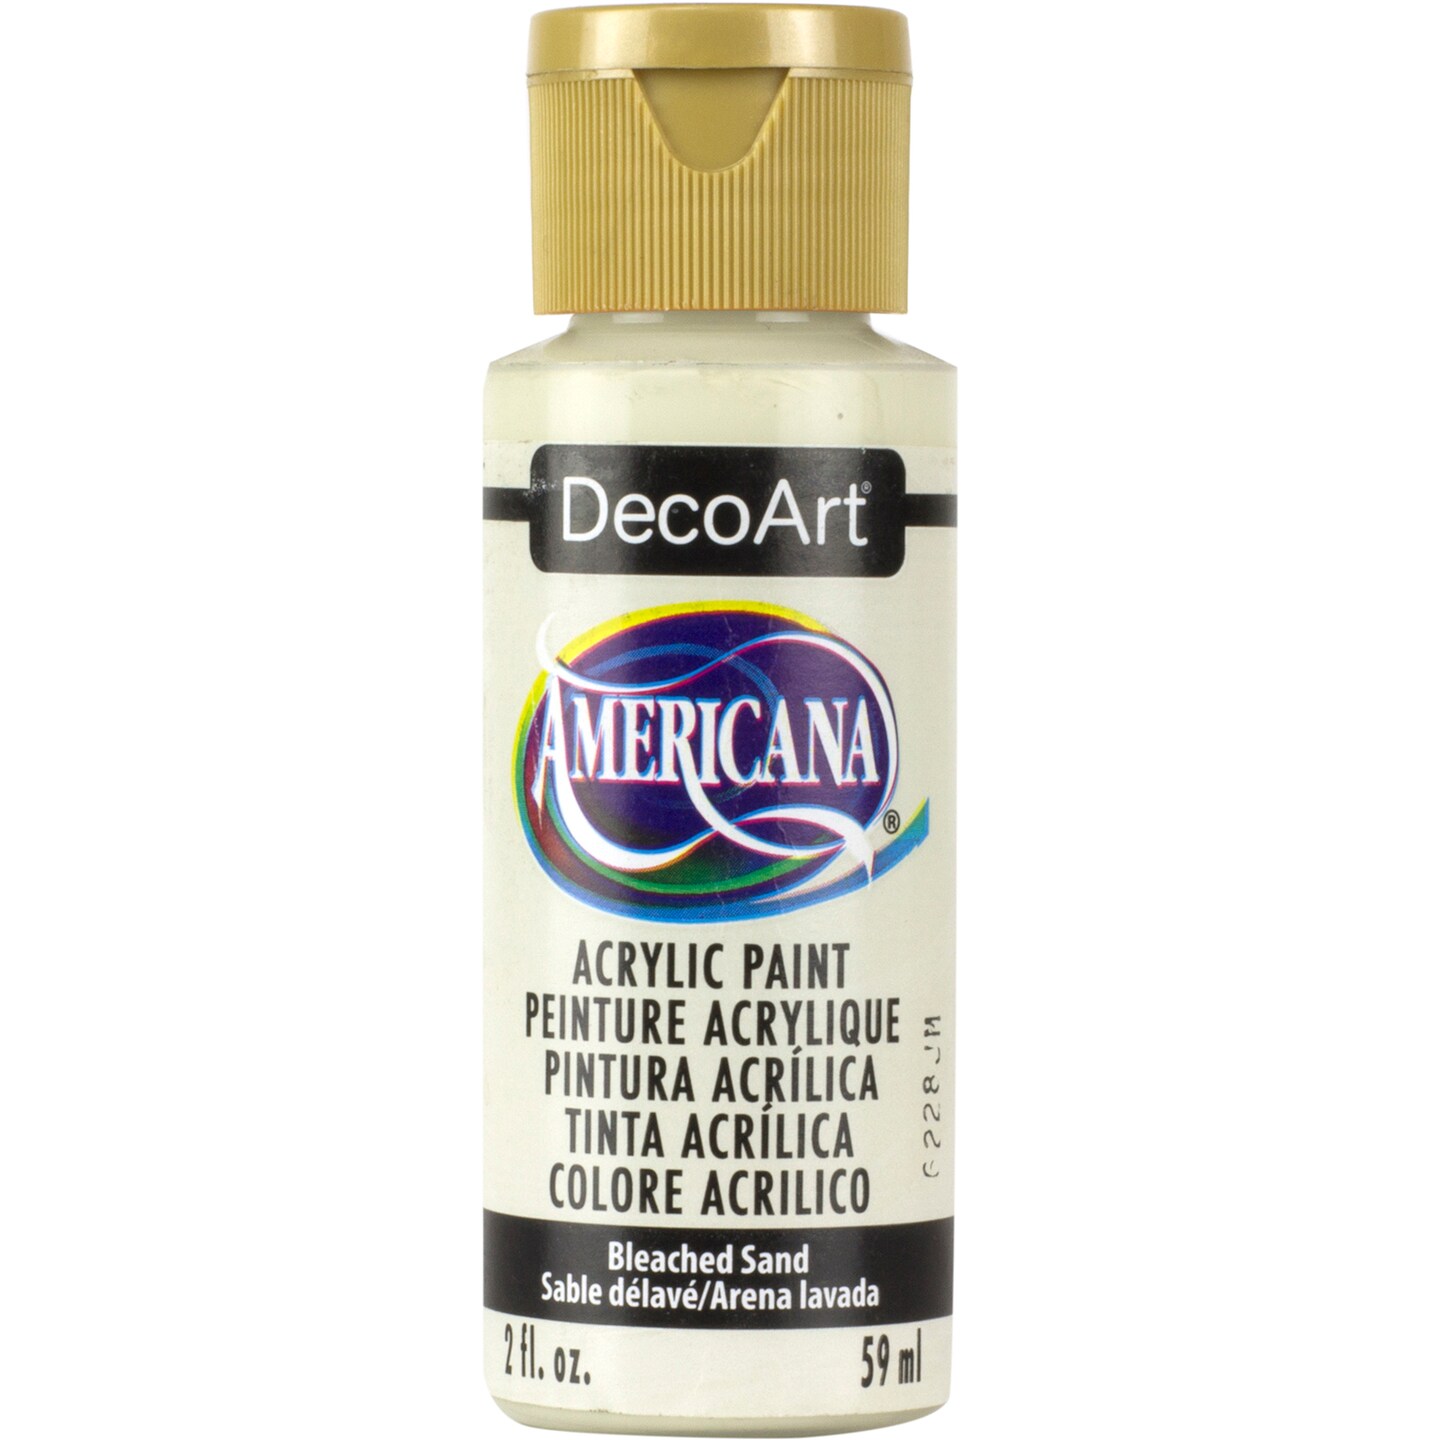 DecoArt Americana Acrylic Paint - Bleach Sand, 2 oz